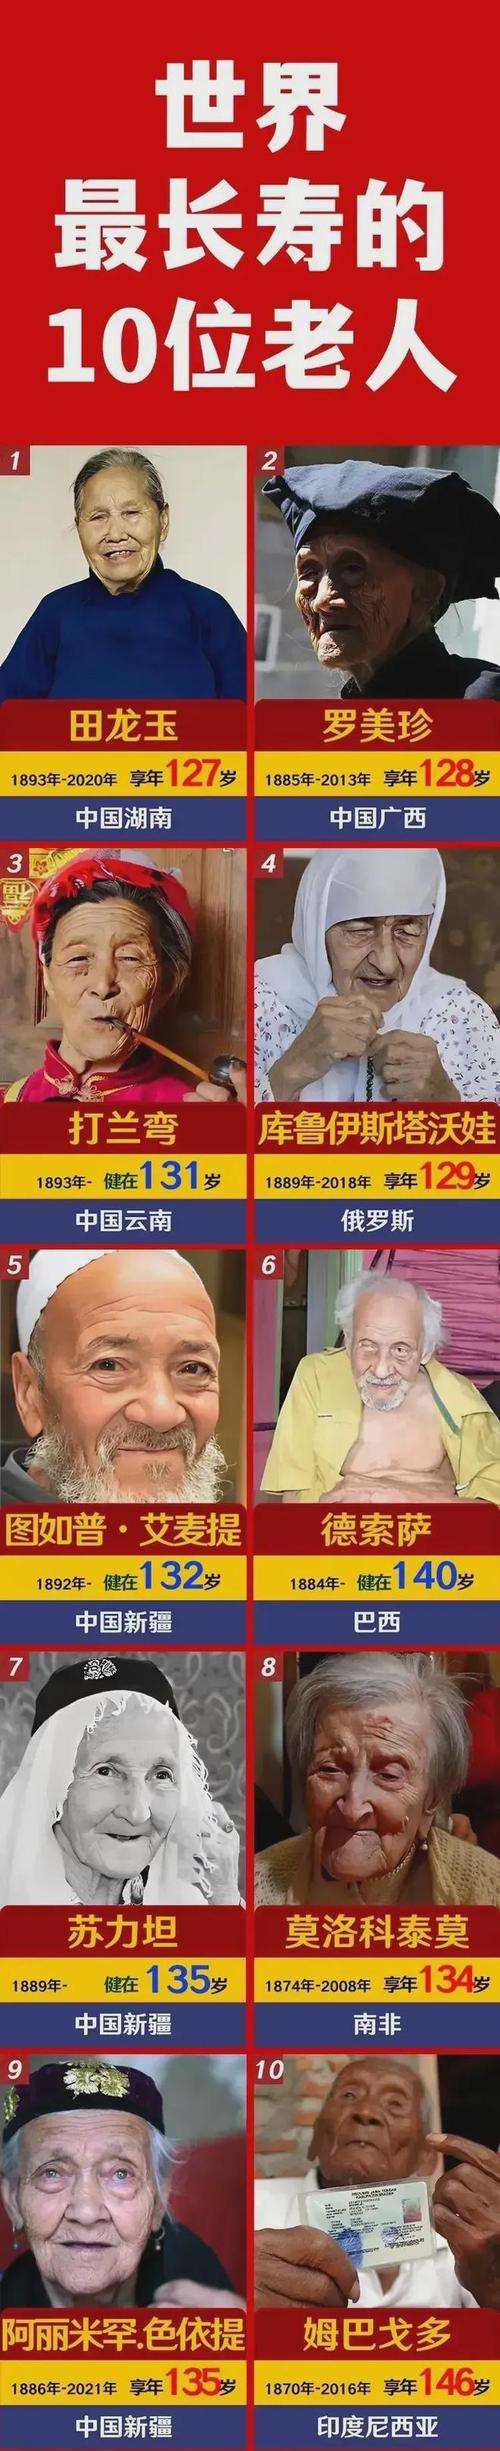 这是世界上最长寿的10位老人我国占了6位